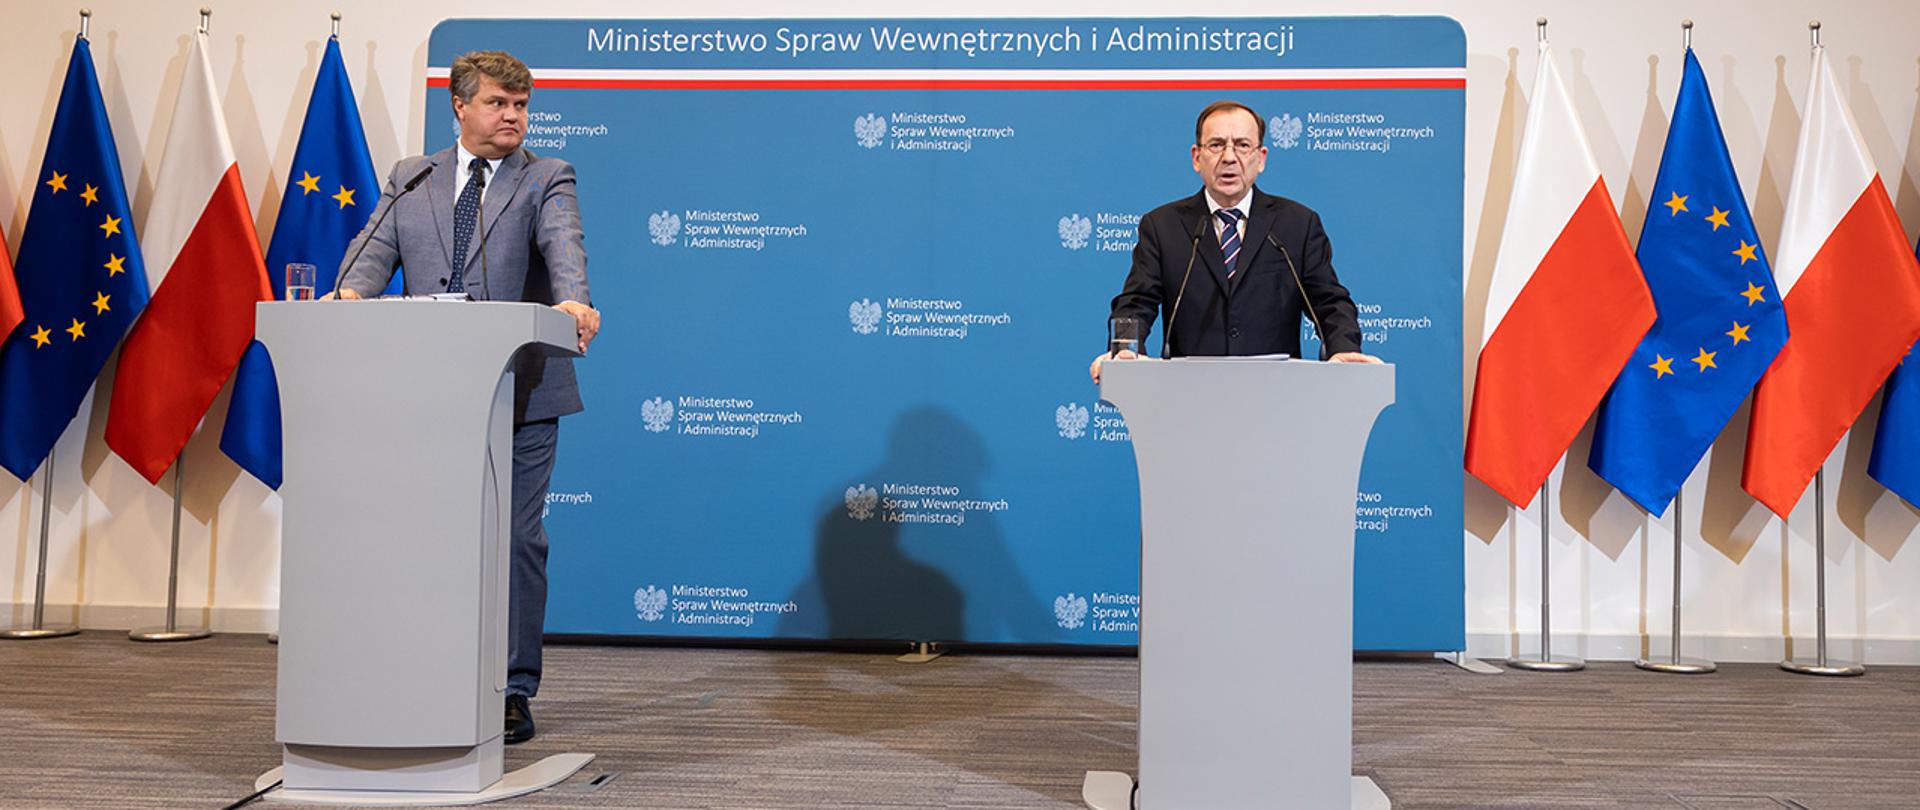 Na zdjęciu widać ministra Mariusza Kamińskiego i wiceministra Macieja Wąsika stojących za mównicami w trakcie konferencji prasowej.